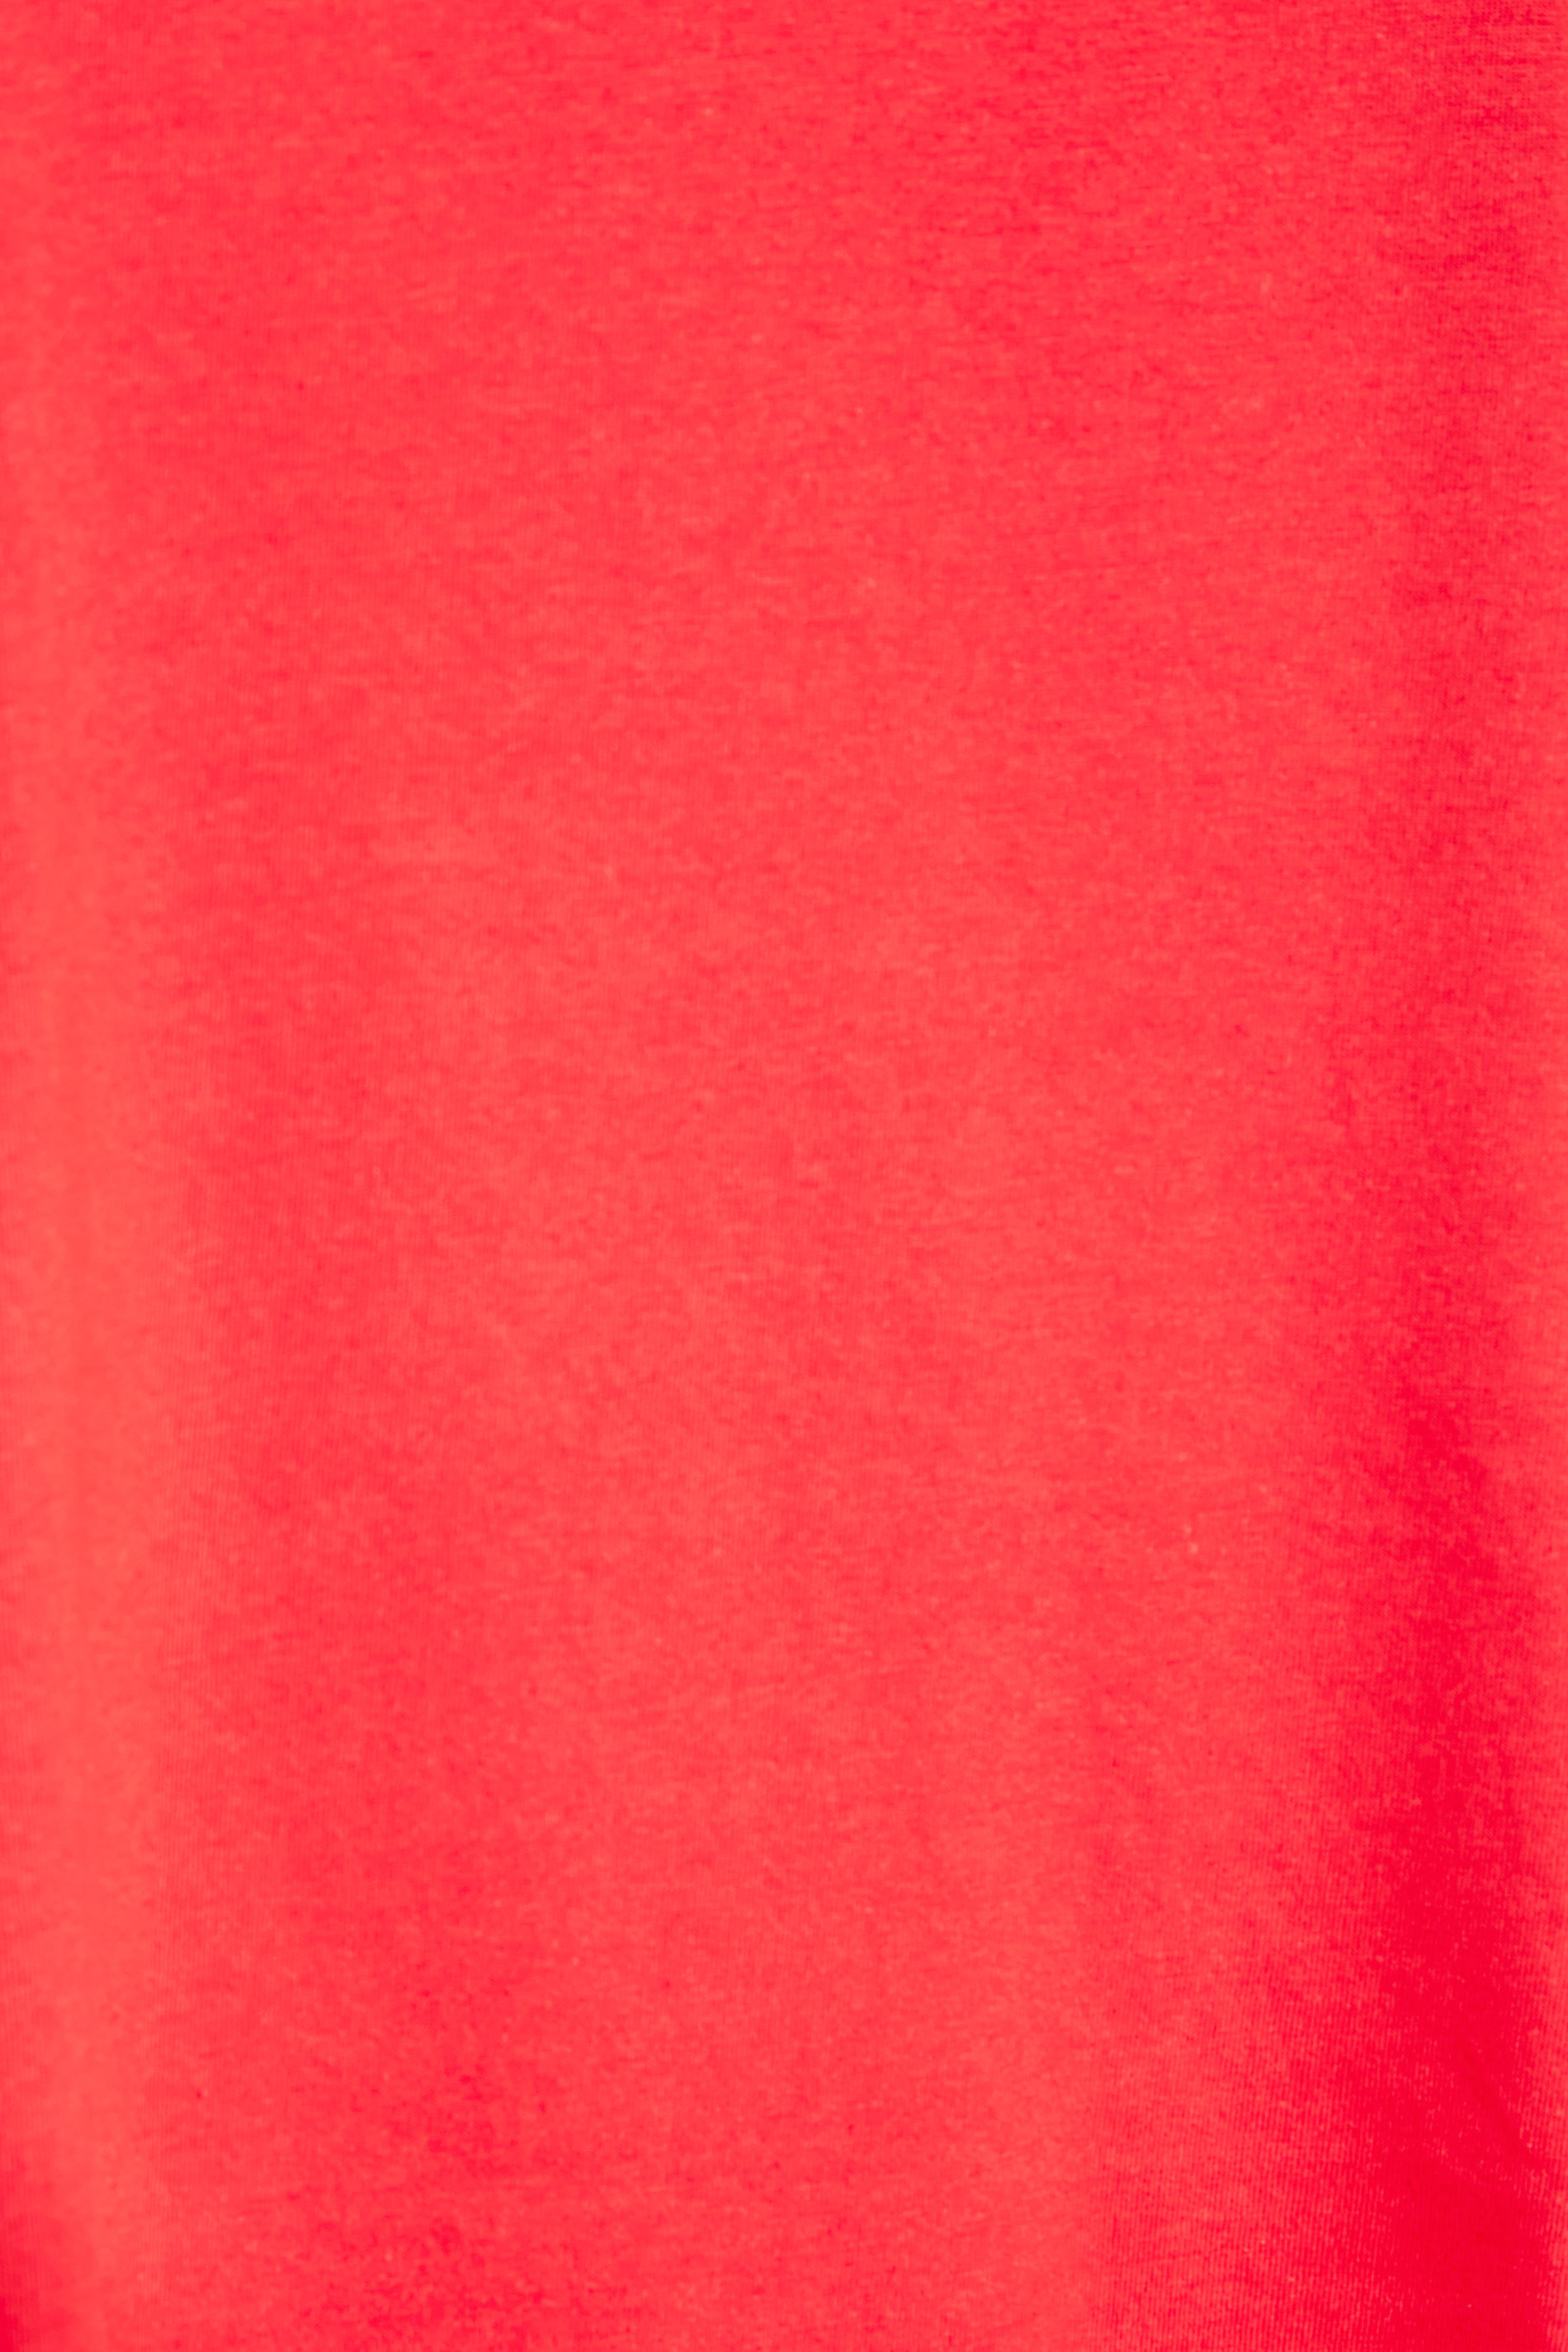 Grande taille  Tops Grande taille  T-Shirts Basiques & Débardeurs | T-Shirt Rose Corail en Jersey Manches Courtes - OQ56610